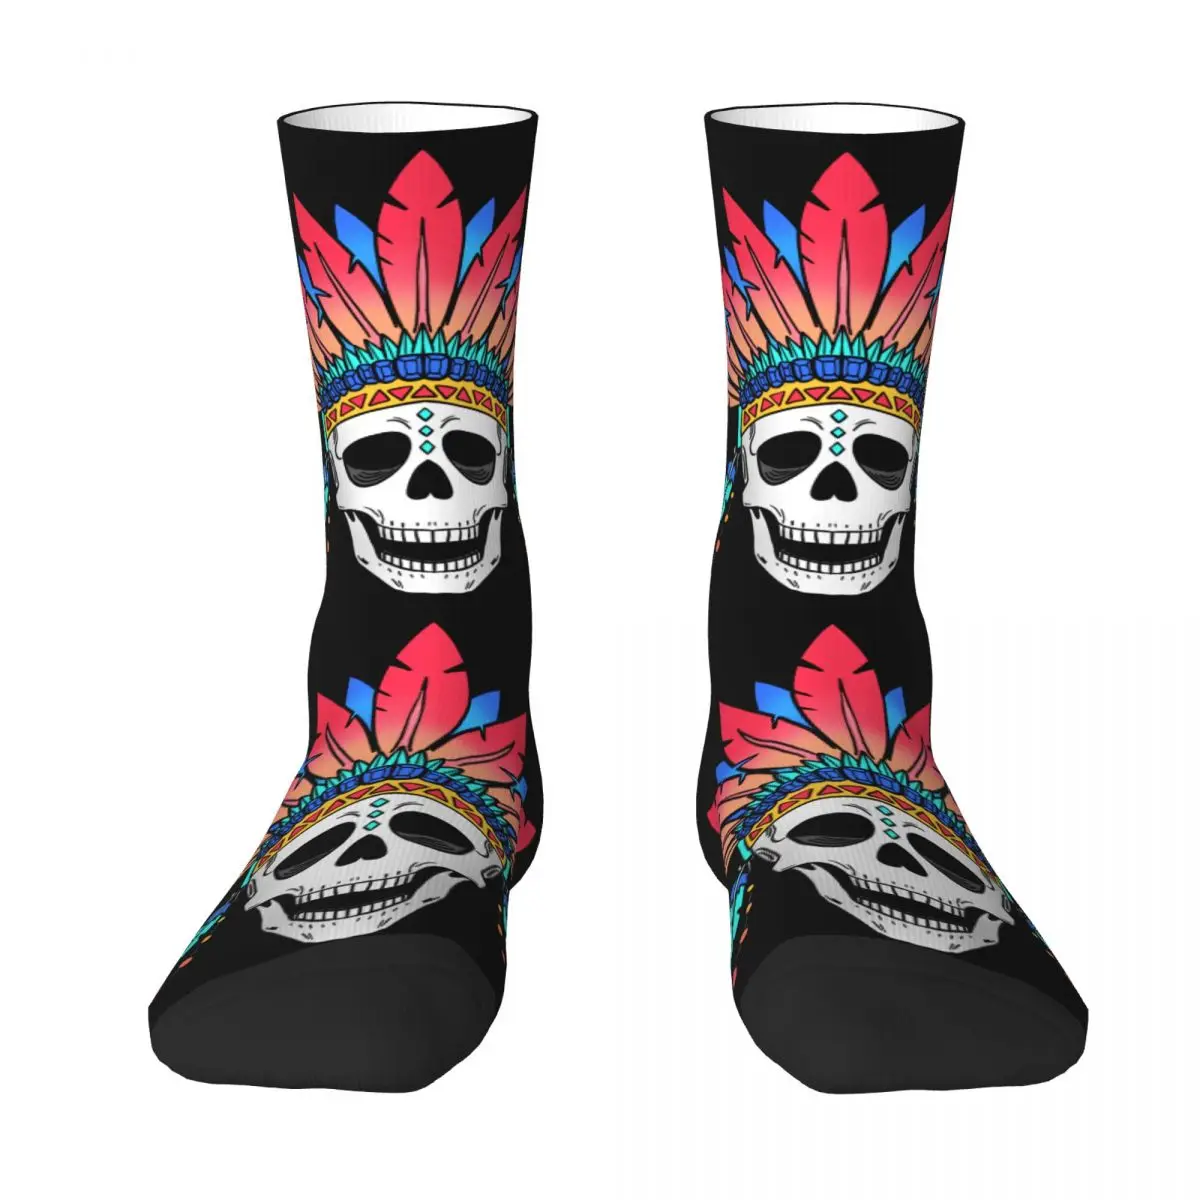 Skeletom, Rainbow Adult Socks skeletom, rainbow Unisex socks,men Socks women Socks brand rainbow men